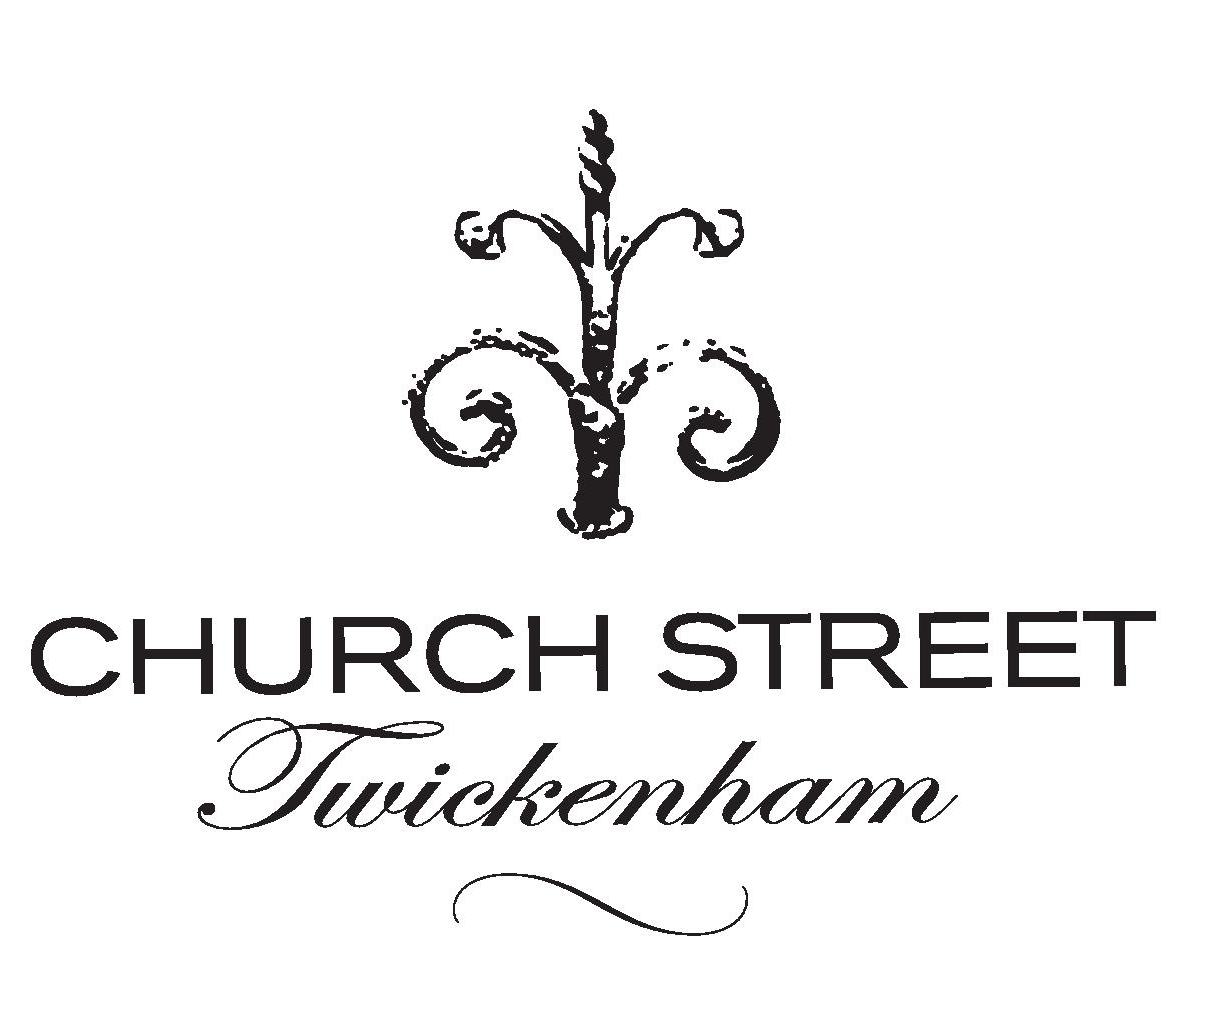 Church Street Association